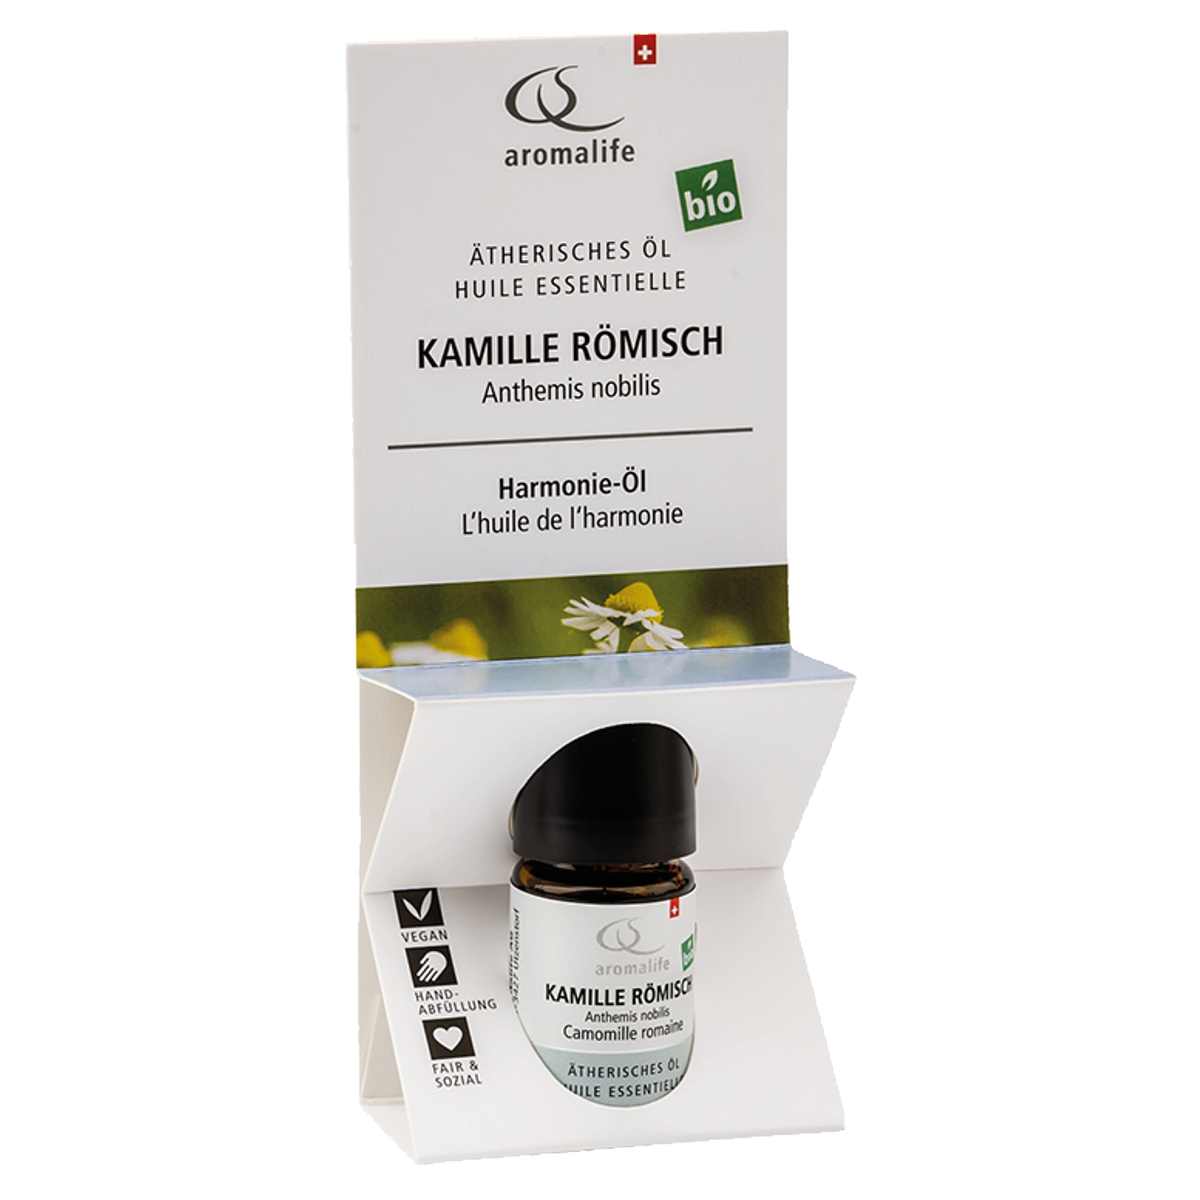 Aromalife Top Kamille römisch ätherisches Öl Bio 5 ml